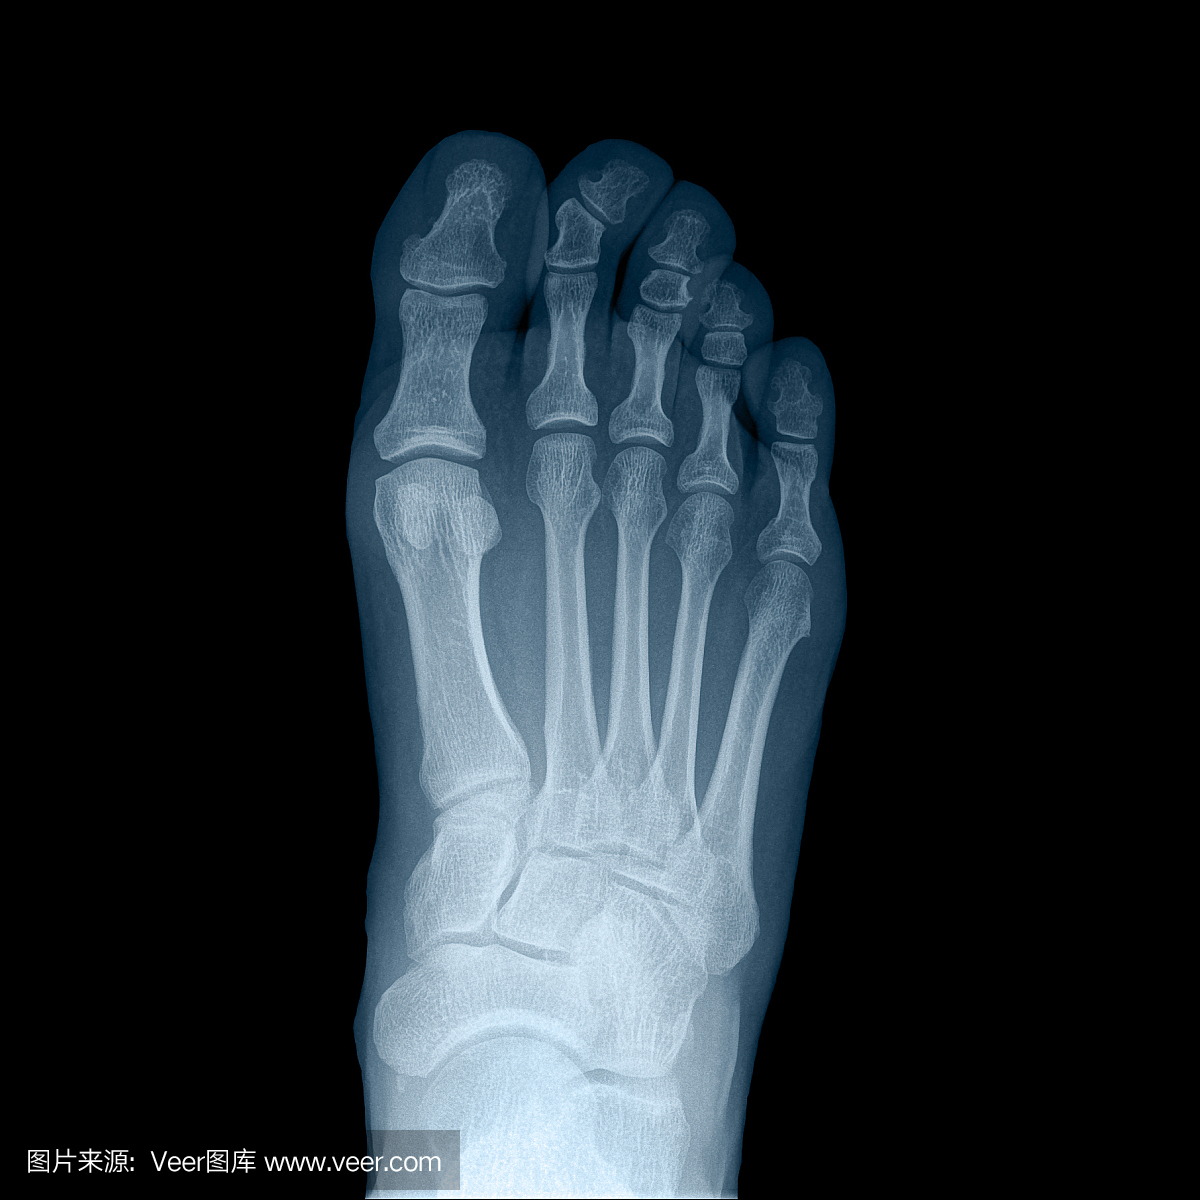 x射线人的右脚 - 顶视图